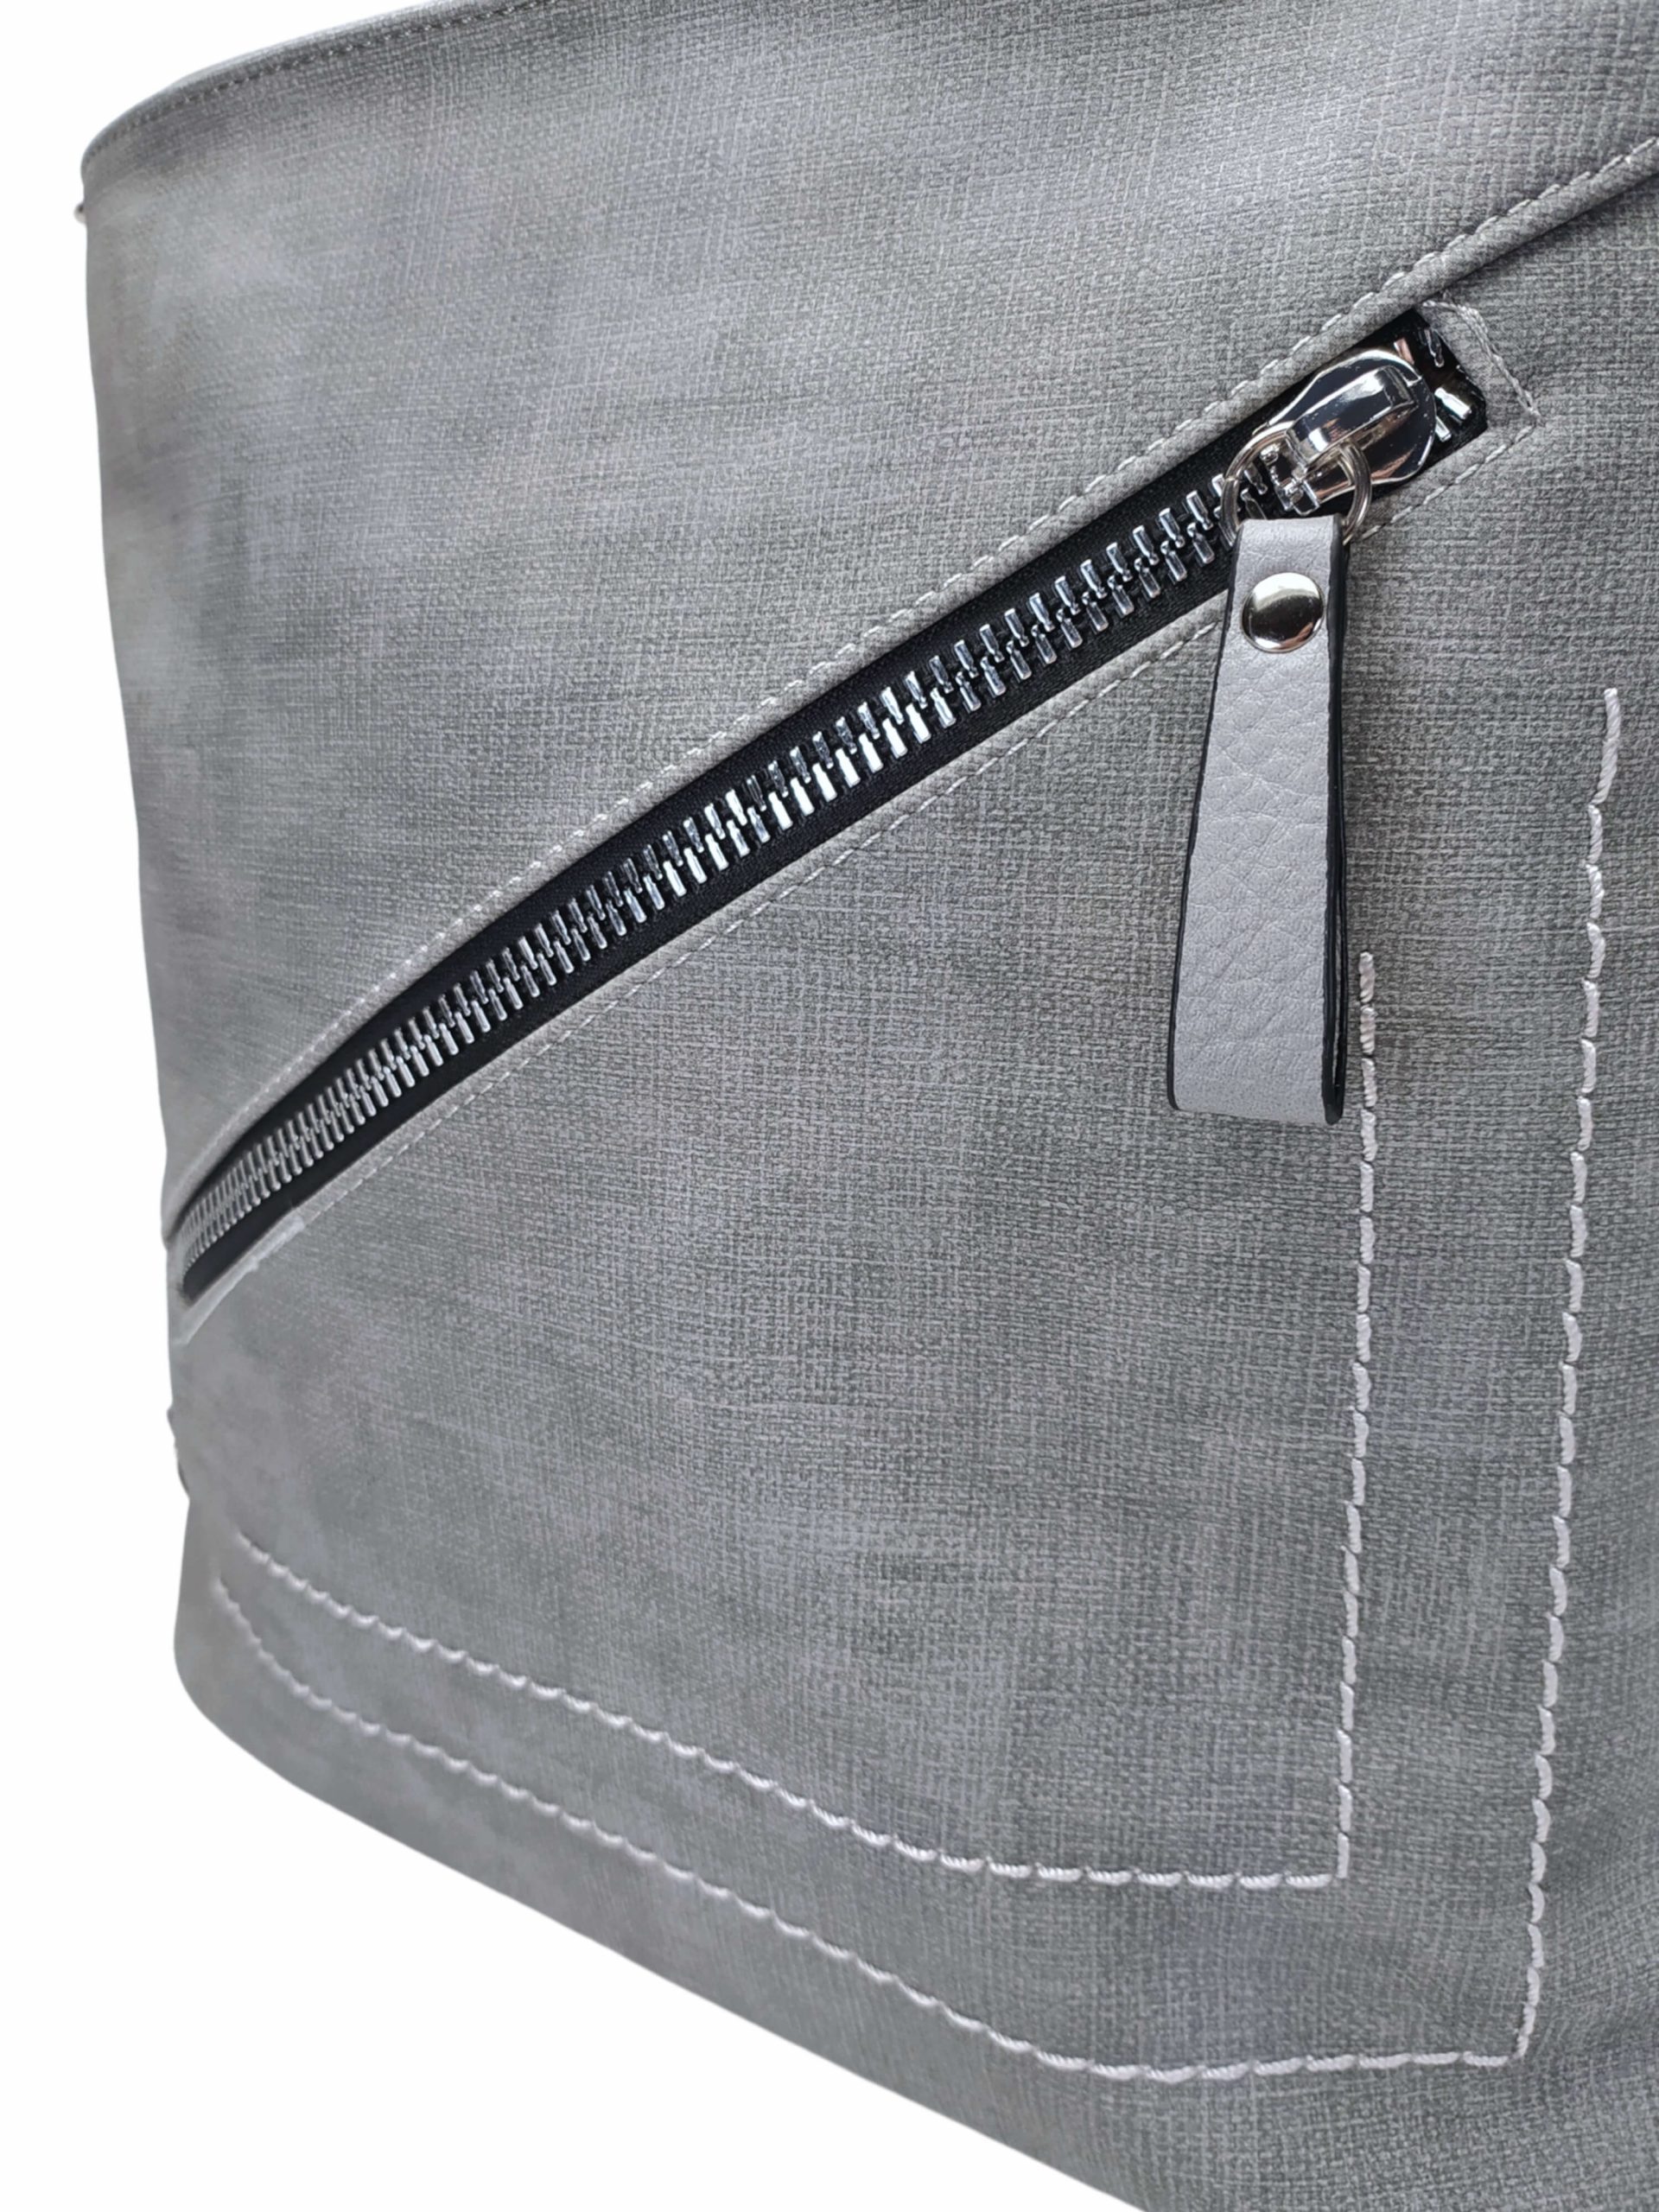 Střední světle šedý kabelko-batoh 2v1 s šikmým zipem, Tapple, H190061, detail kabelko-batohu 2v1